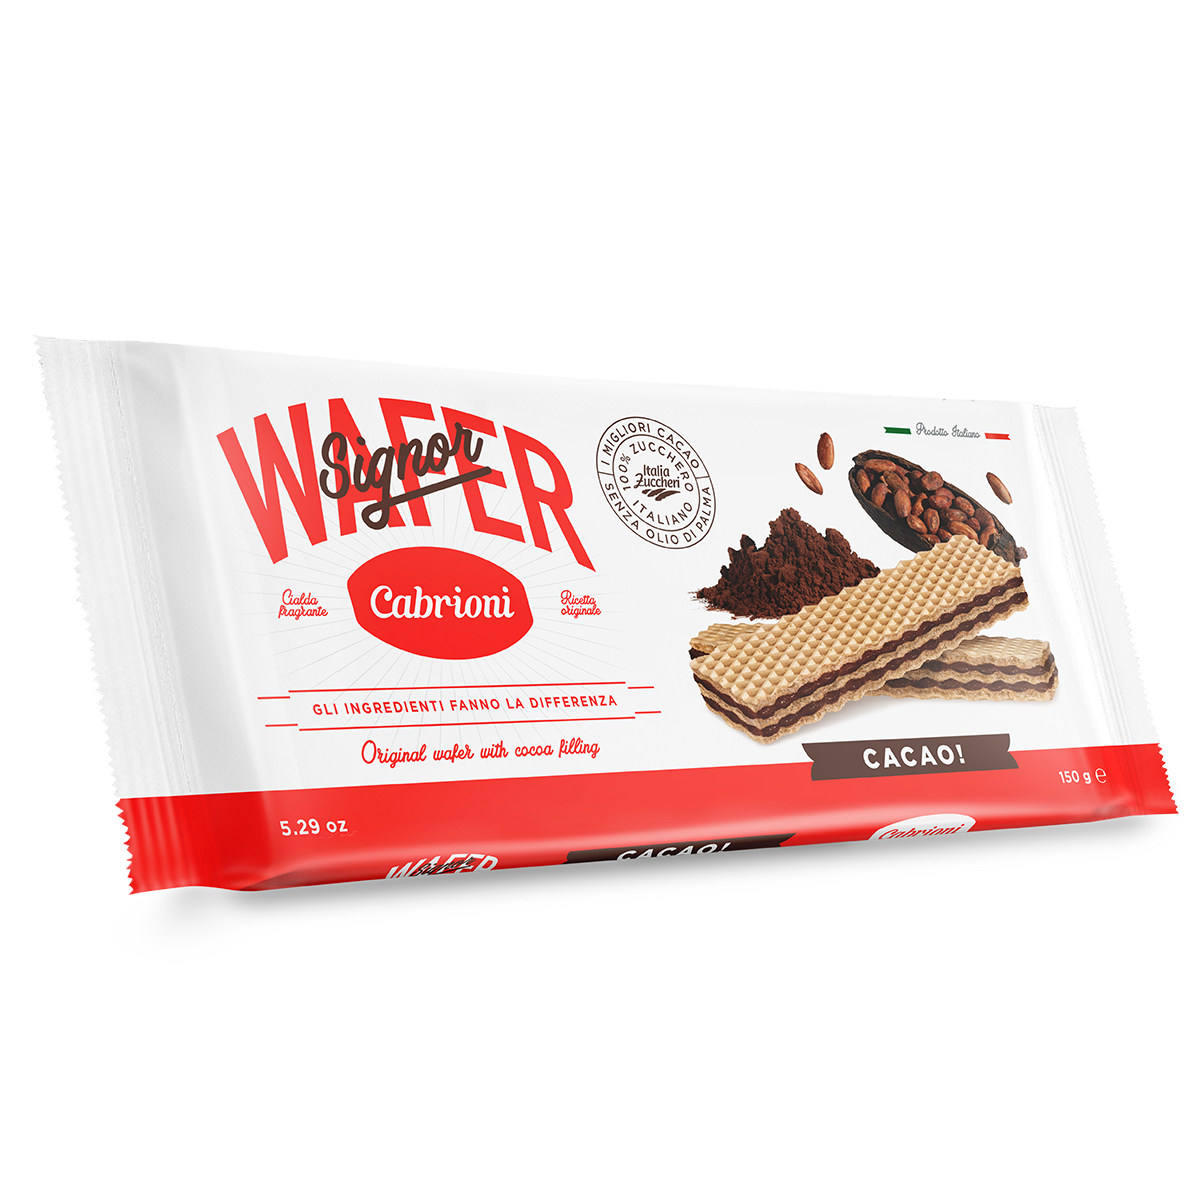 Вафли Cabrioni Signor Wafer шоколад 150 г соломка картофельная grizzon со вкусом сыра 40 гр